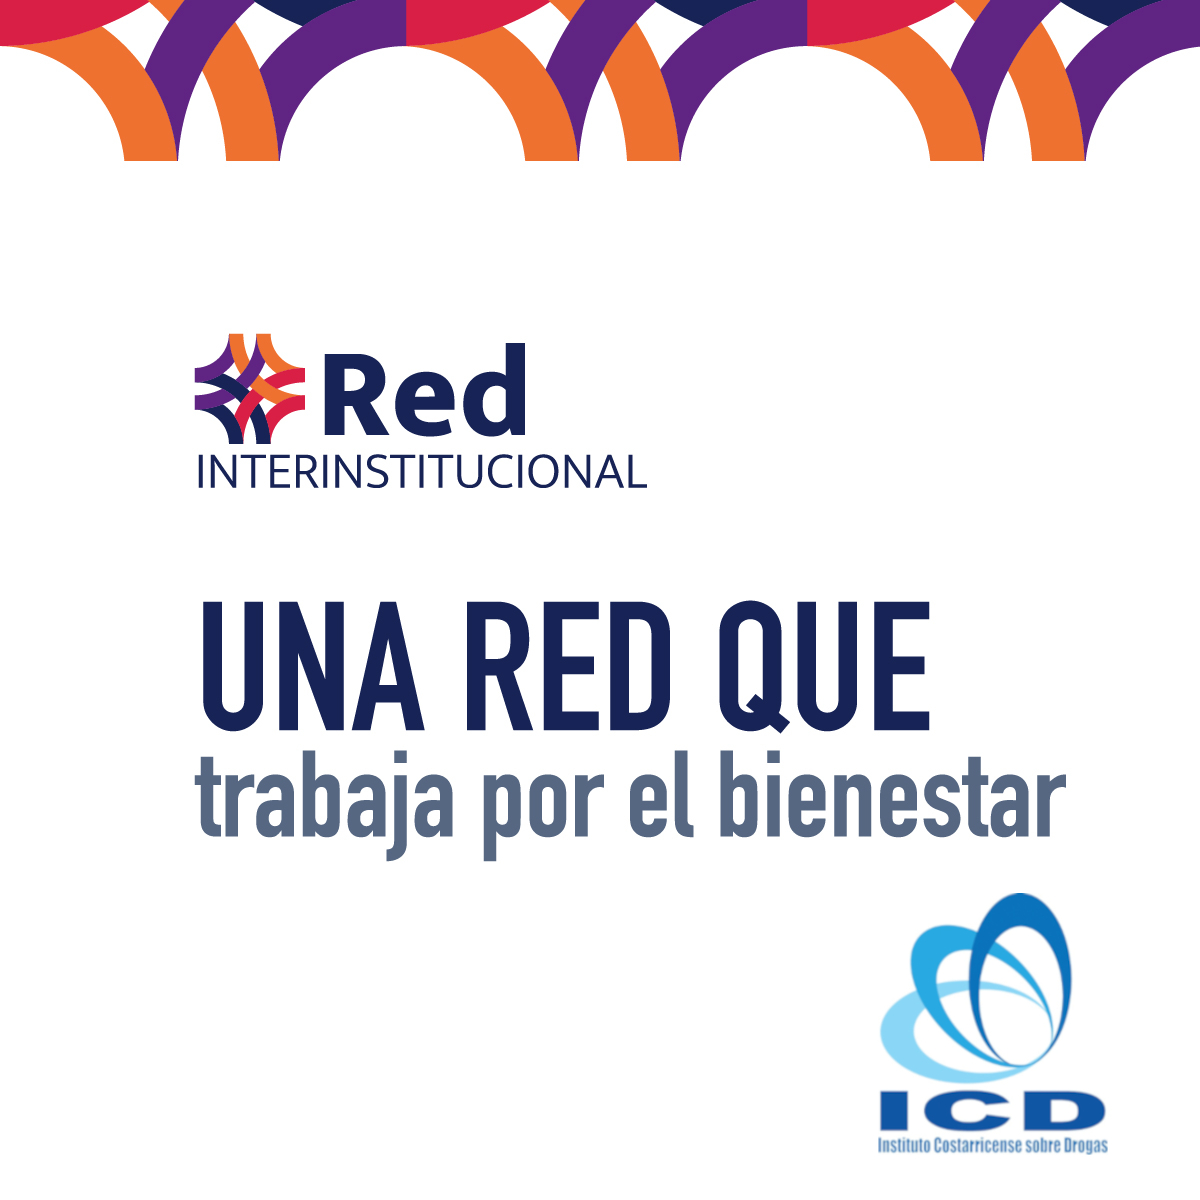 UNA RED QUE trabaja por el bienestar, Red Insterinstitucional